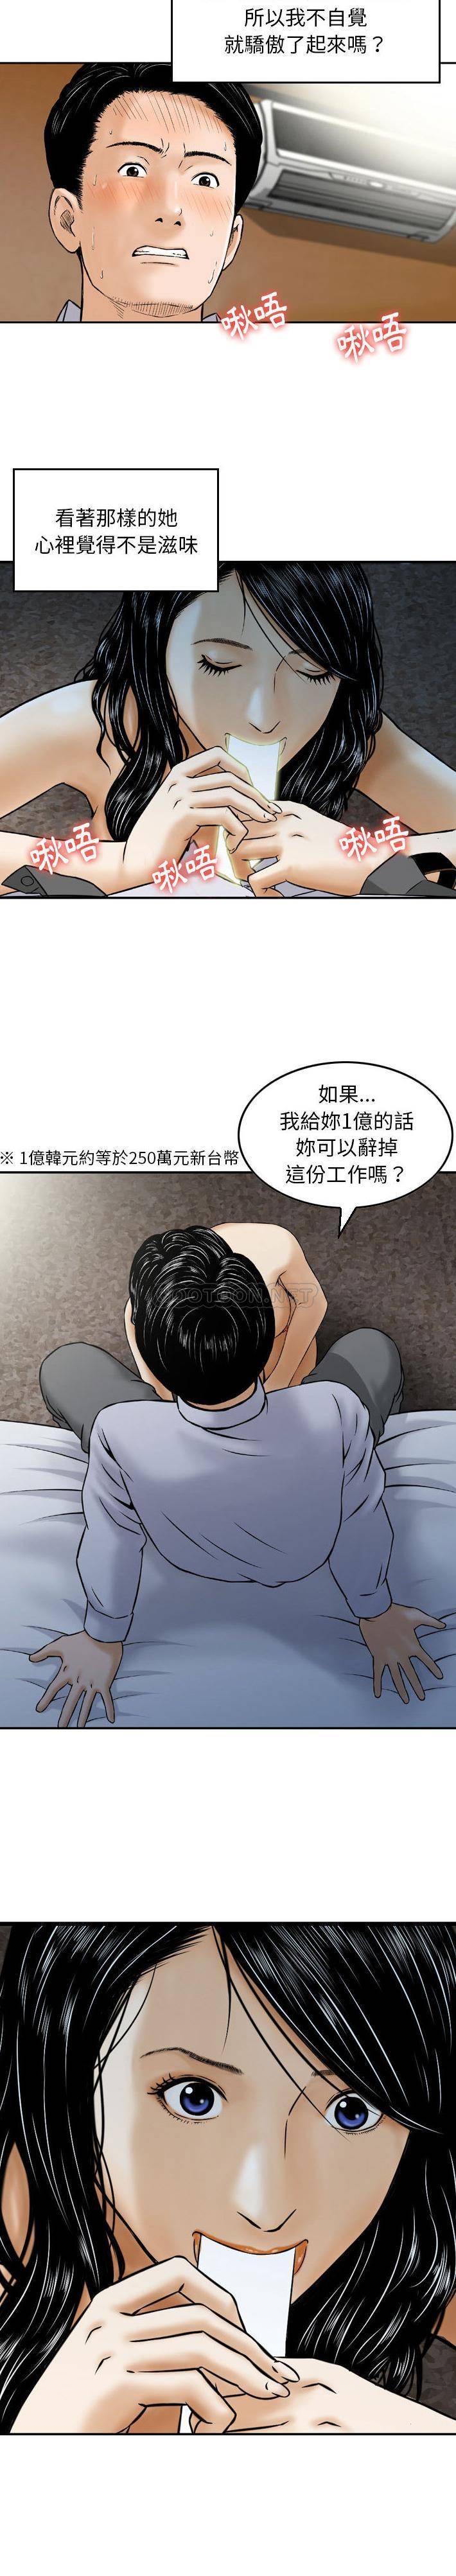 韩国污漫画 金錢的魅力 第2话 7